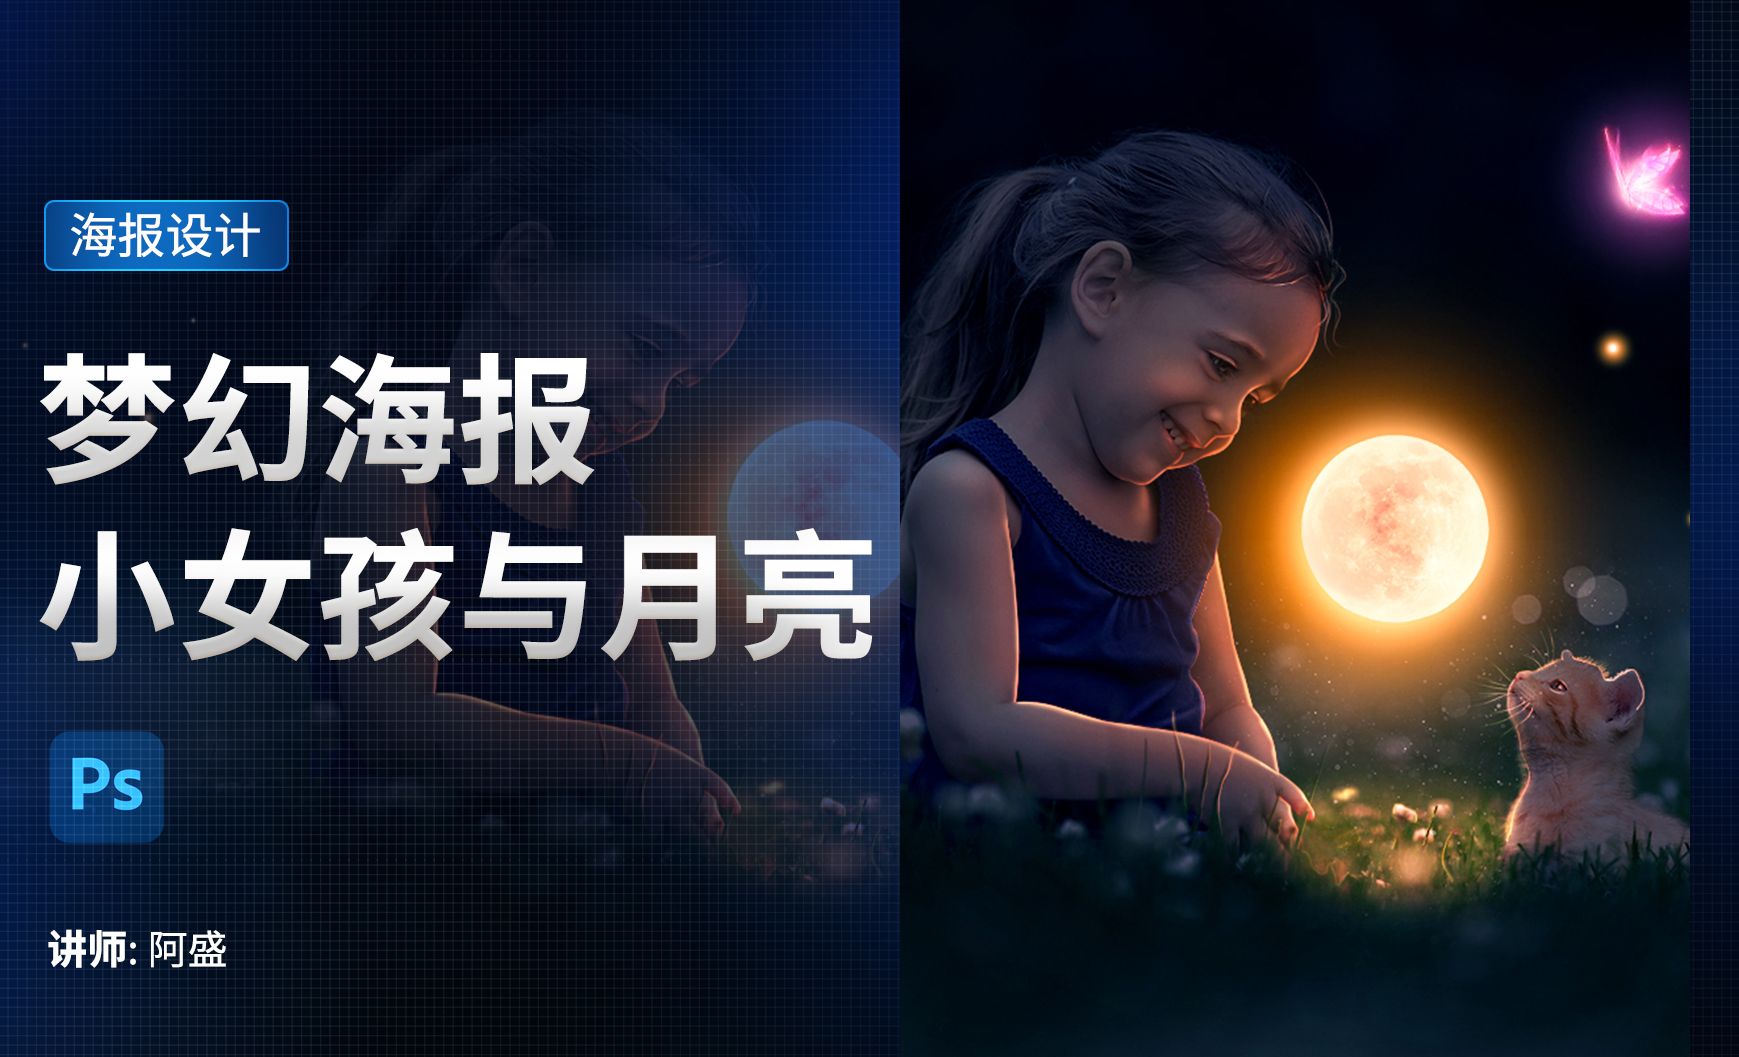 PS-梦幻海报合成-小女孩与月亮